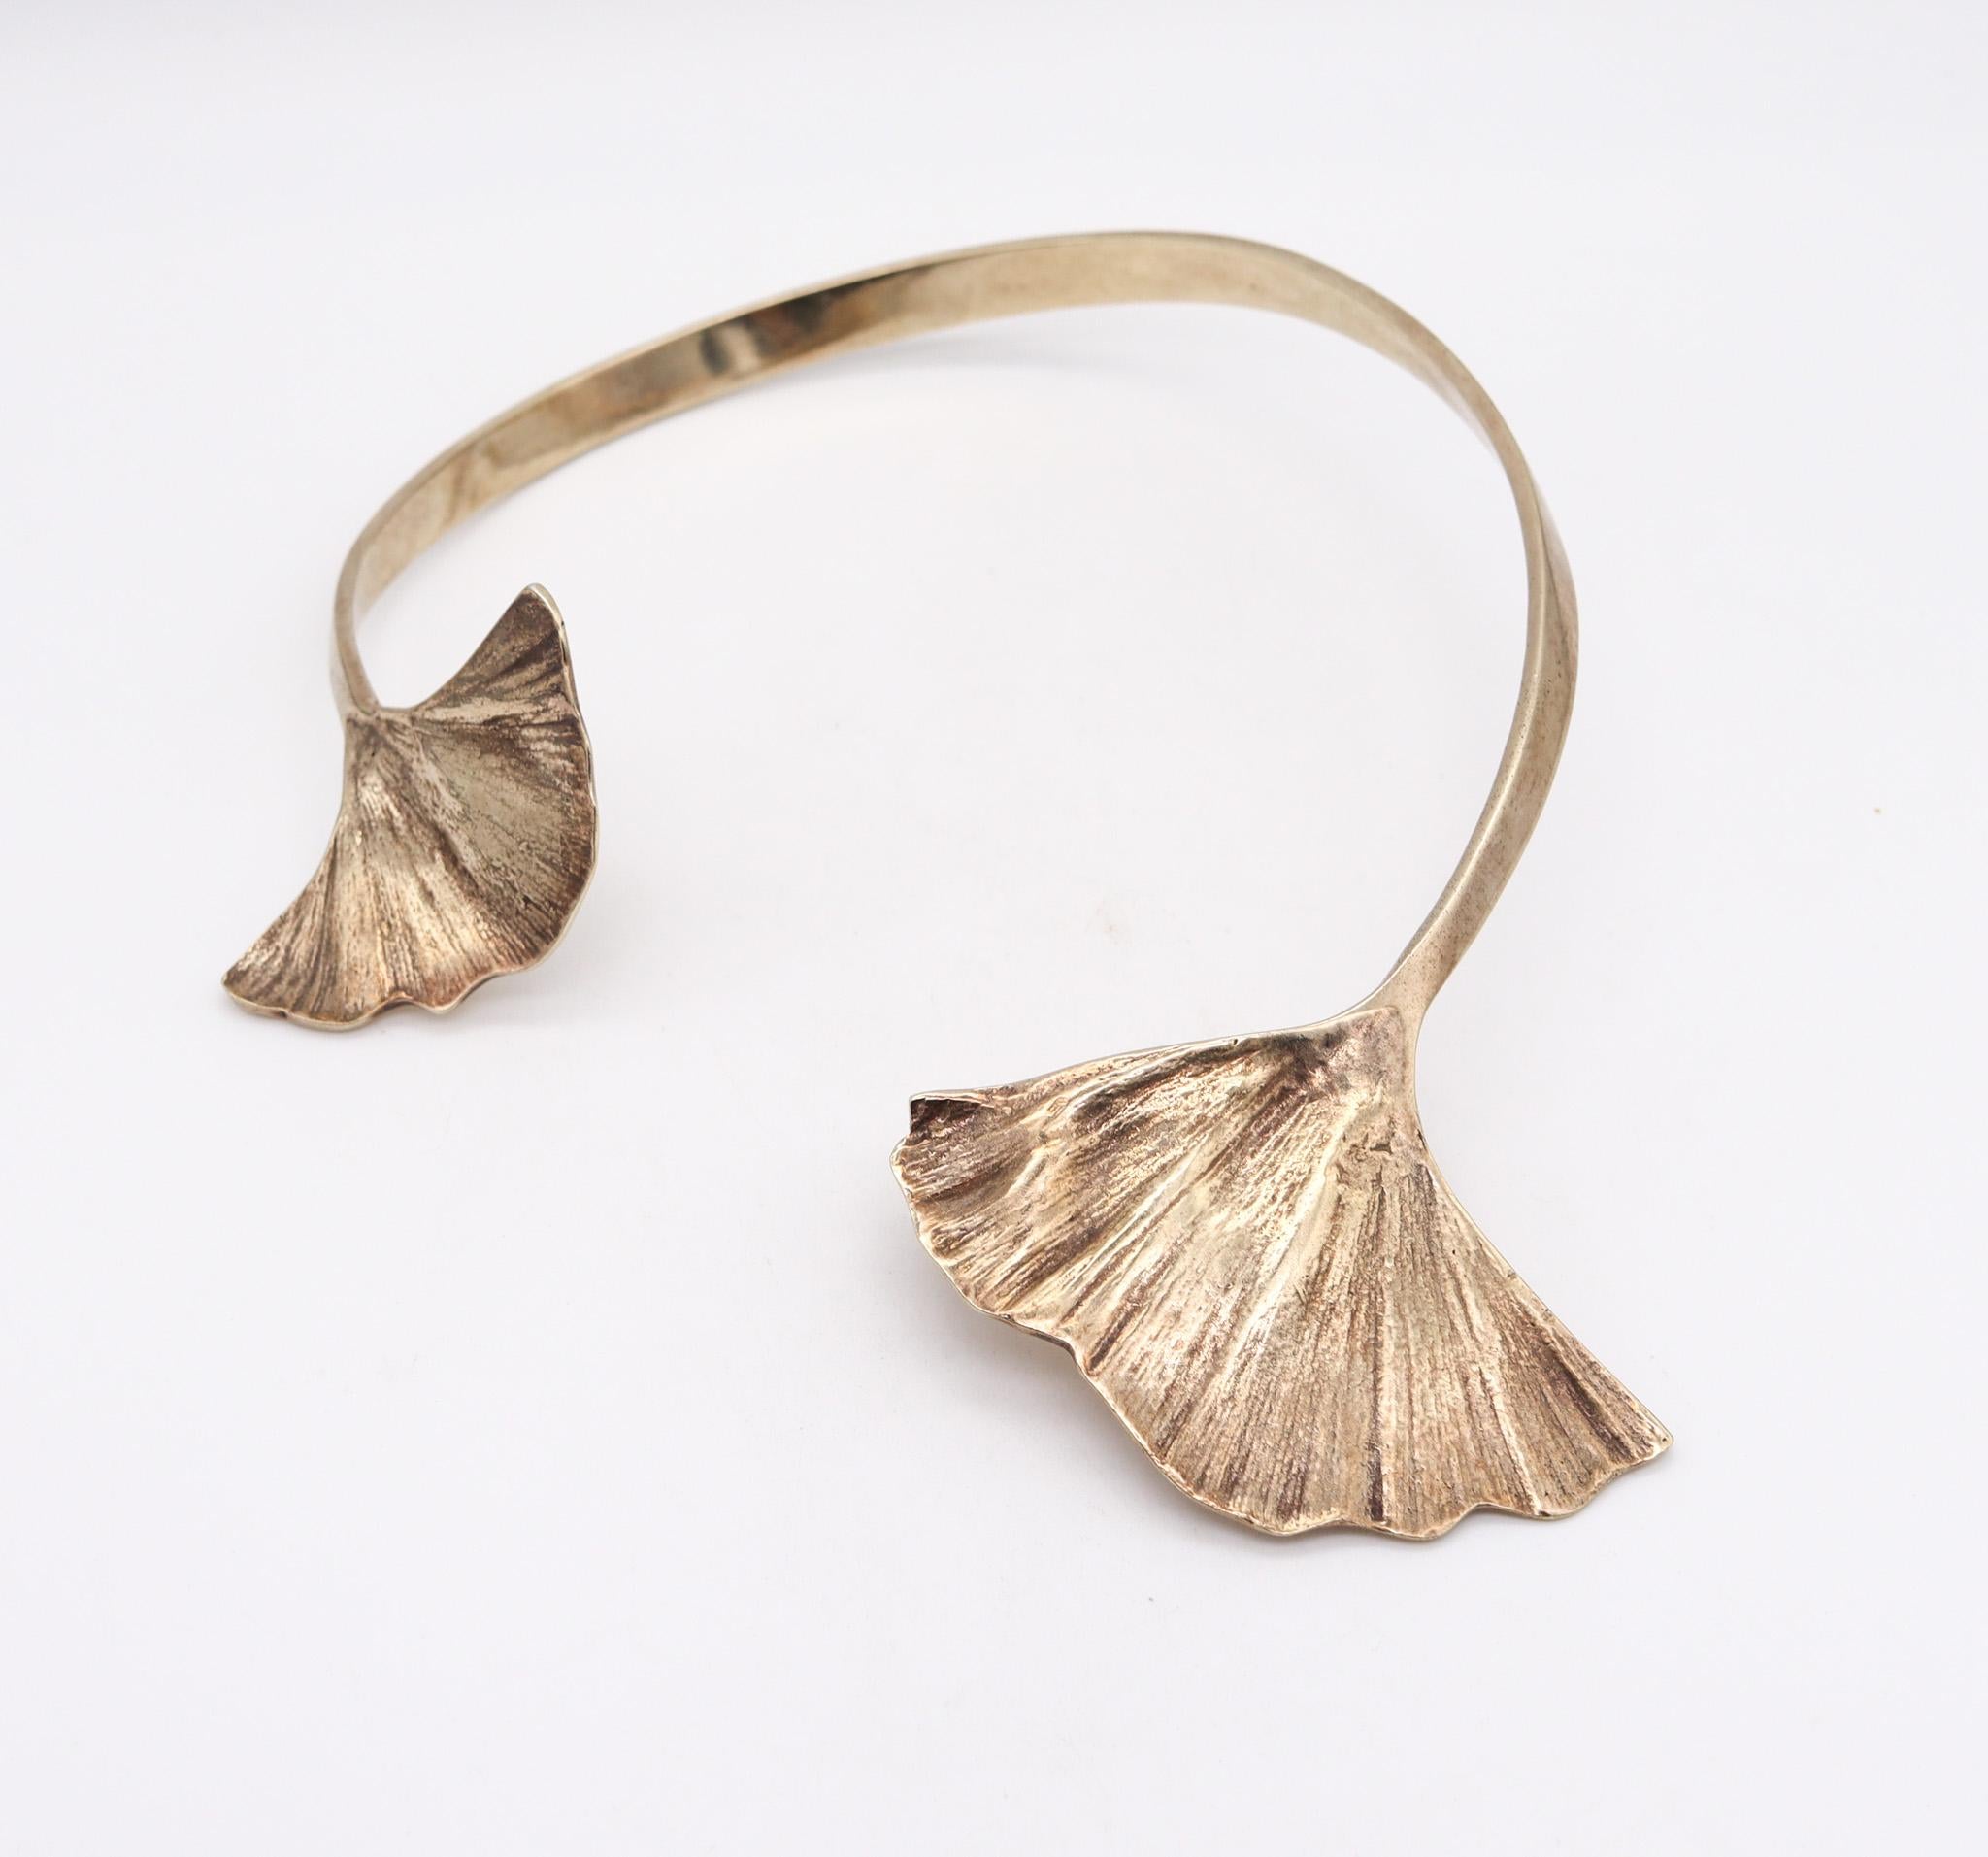 Collier double en gingko conçu par Paul/One (1946-).

Un prototype de bracelet manchette sculptural, créé à Paris en France par le sculpteur Paul Oudet, dans les années 1970. Cette pièce organique a été réalisée comme une pièce unique en argent